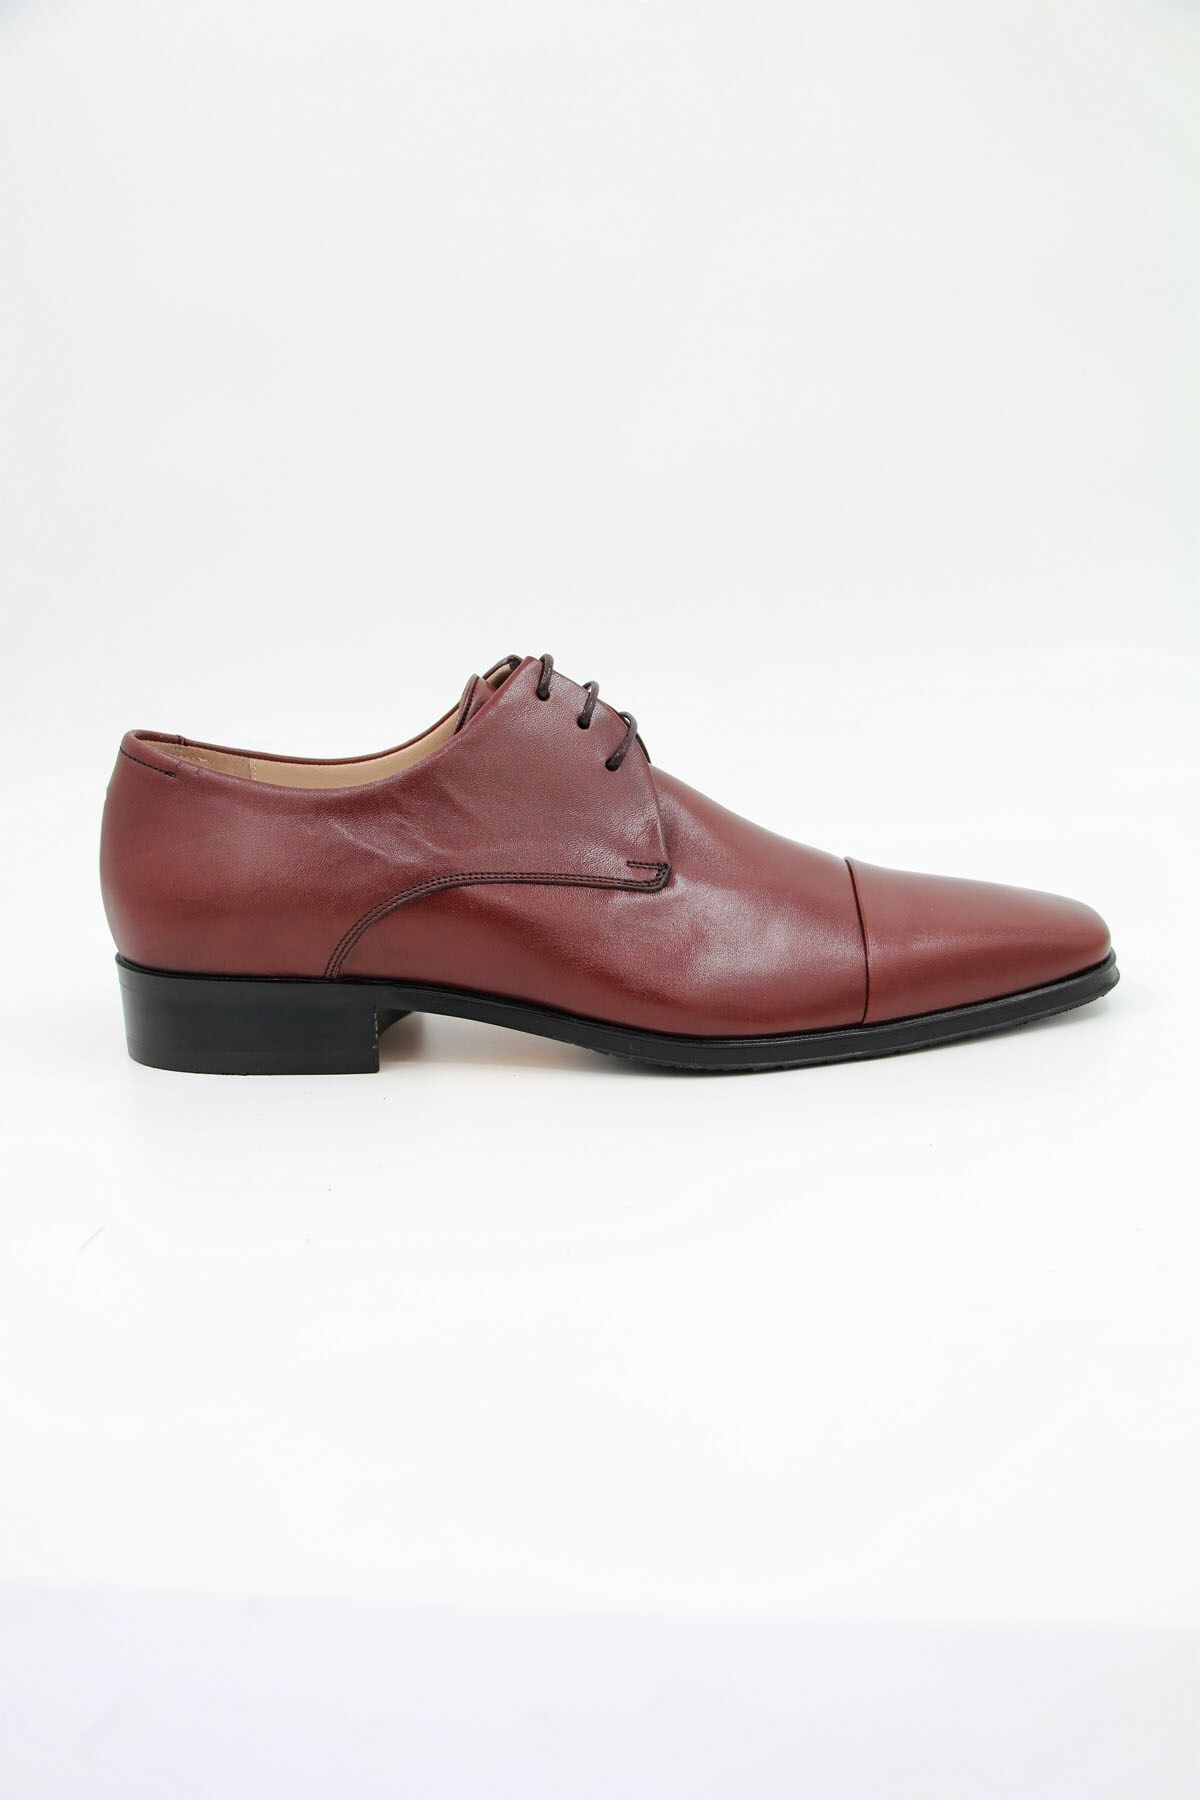 Nevzat Onay 6065-172 Erkek Klasik Ayakkabı - Kahverengi